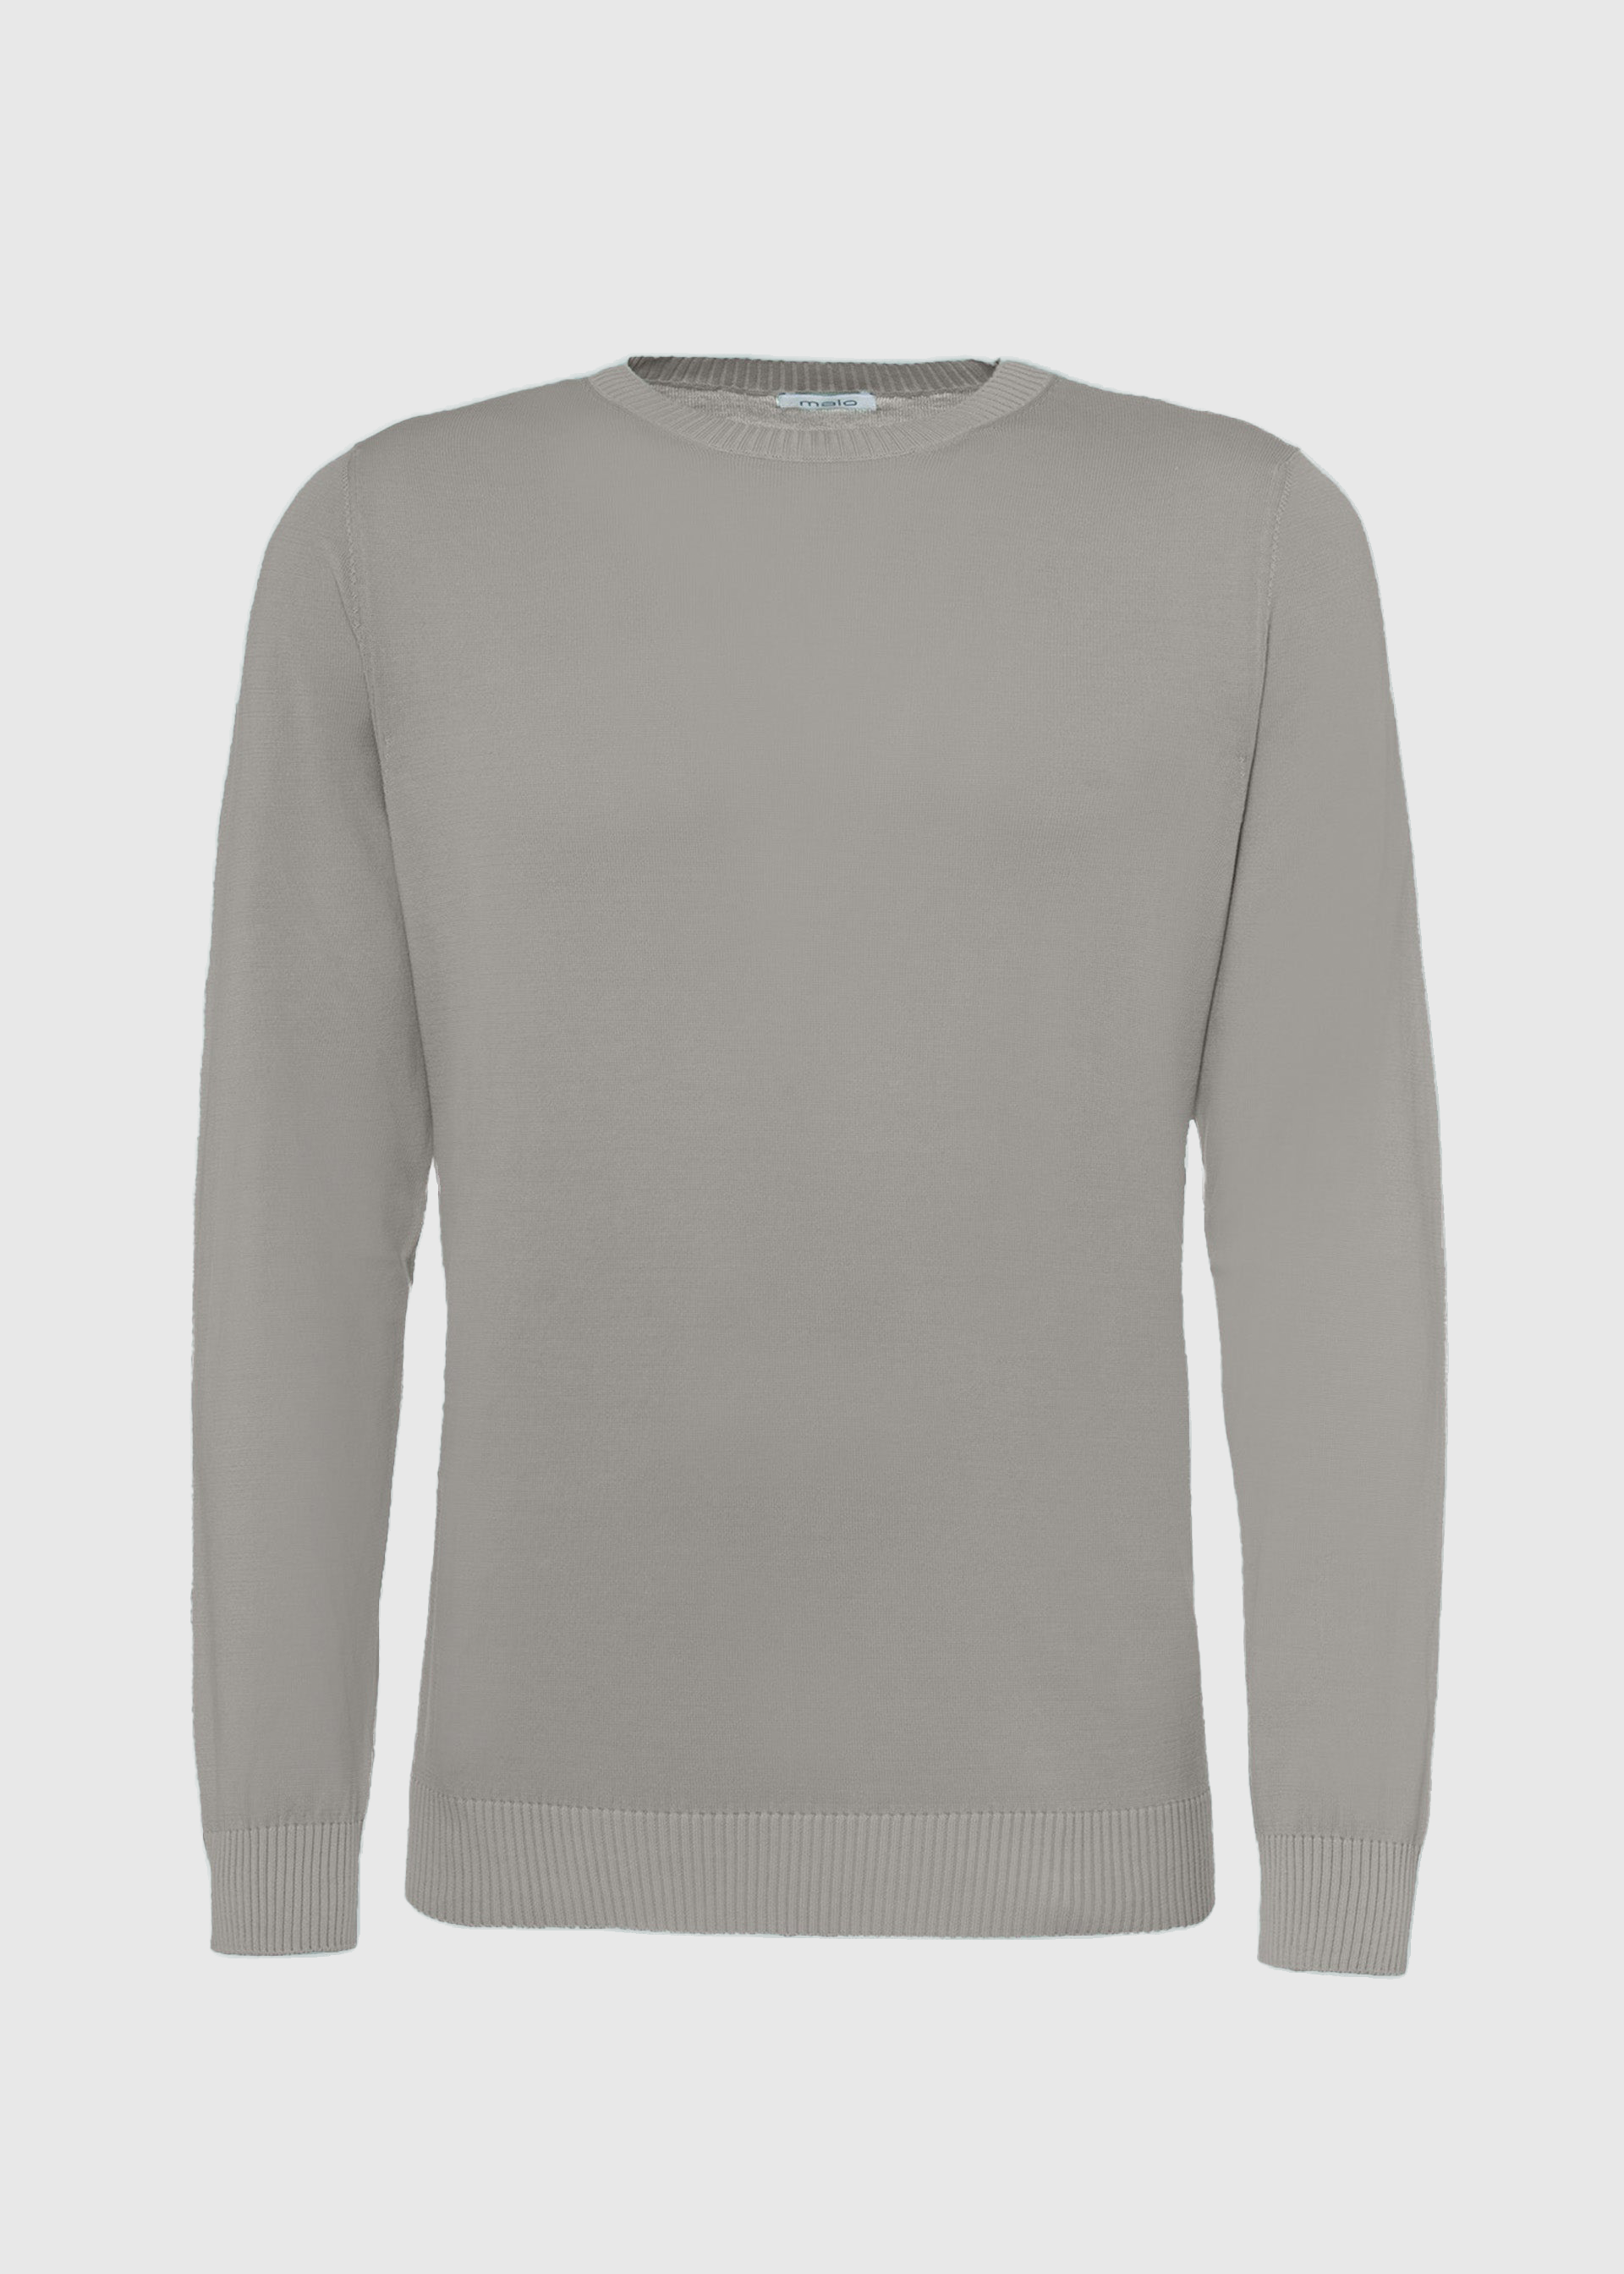 Malo Cotton Crewneck Sweater In Gray